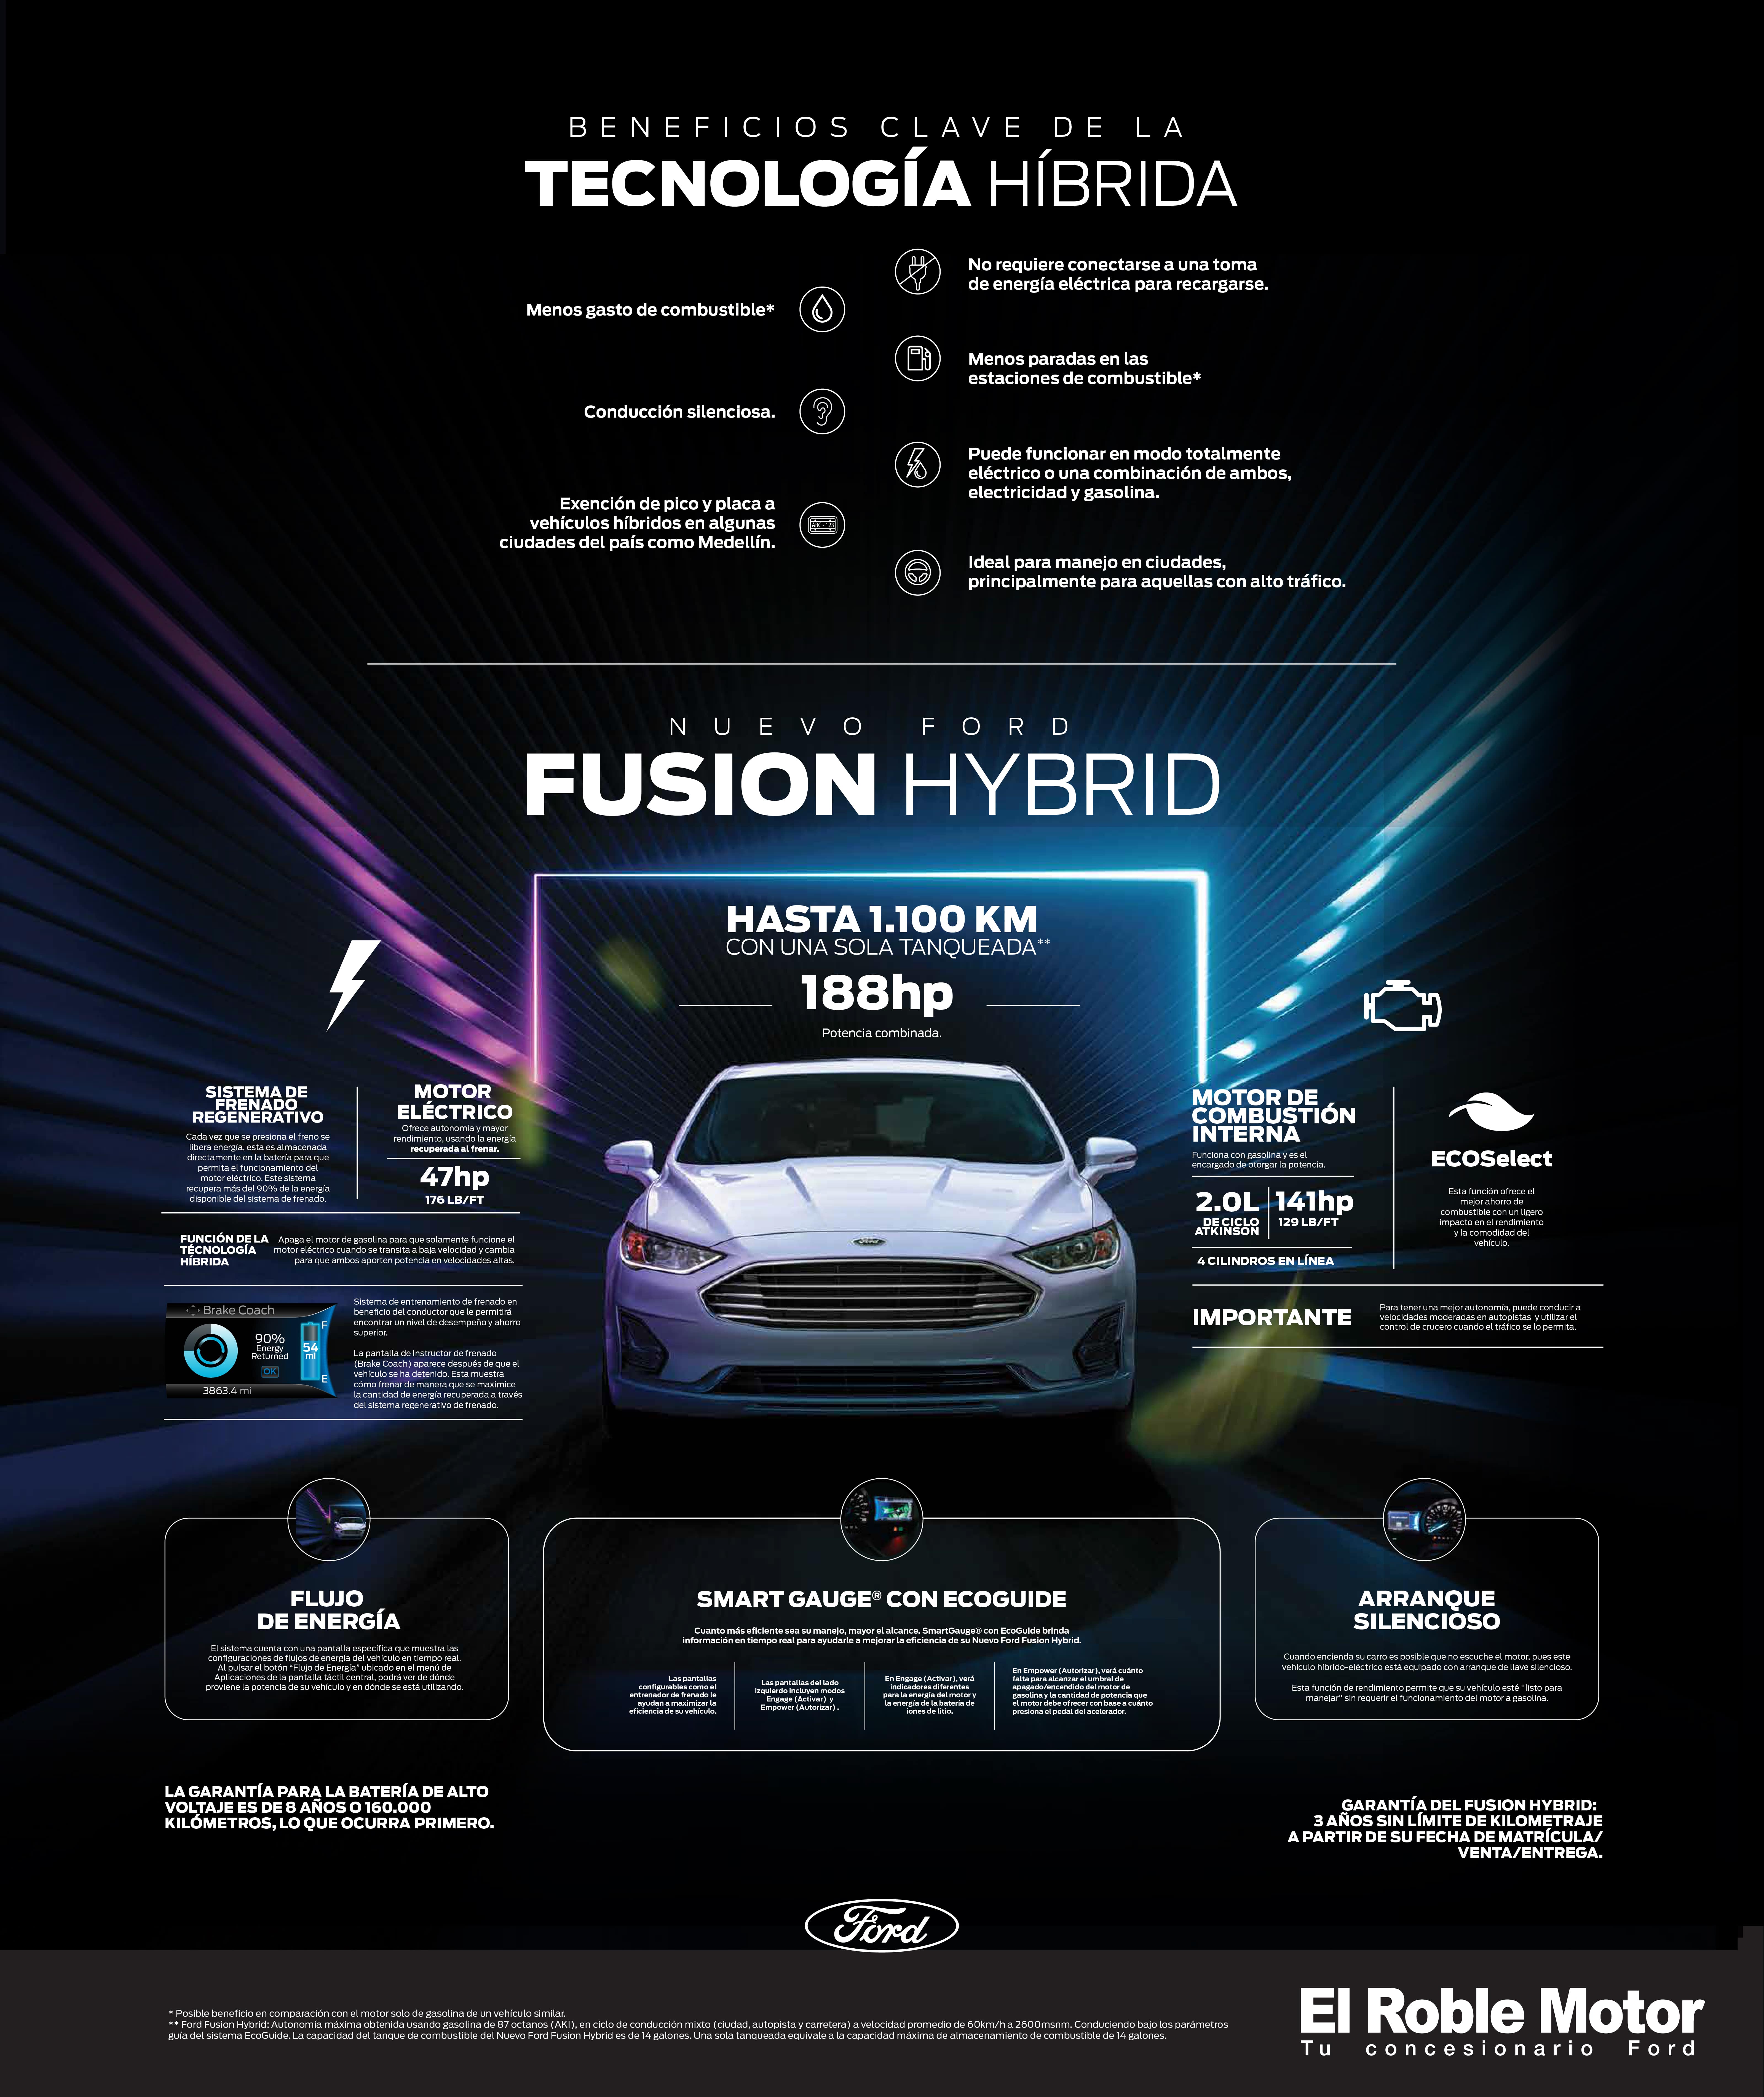 Te explicamos como funciona el nuevo Ford Fusion Hybrid